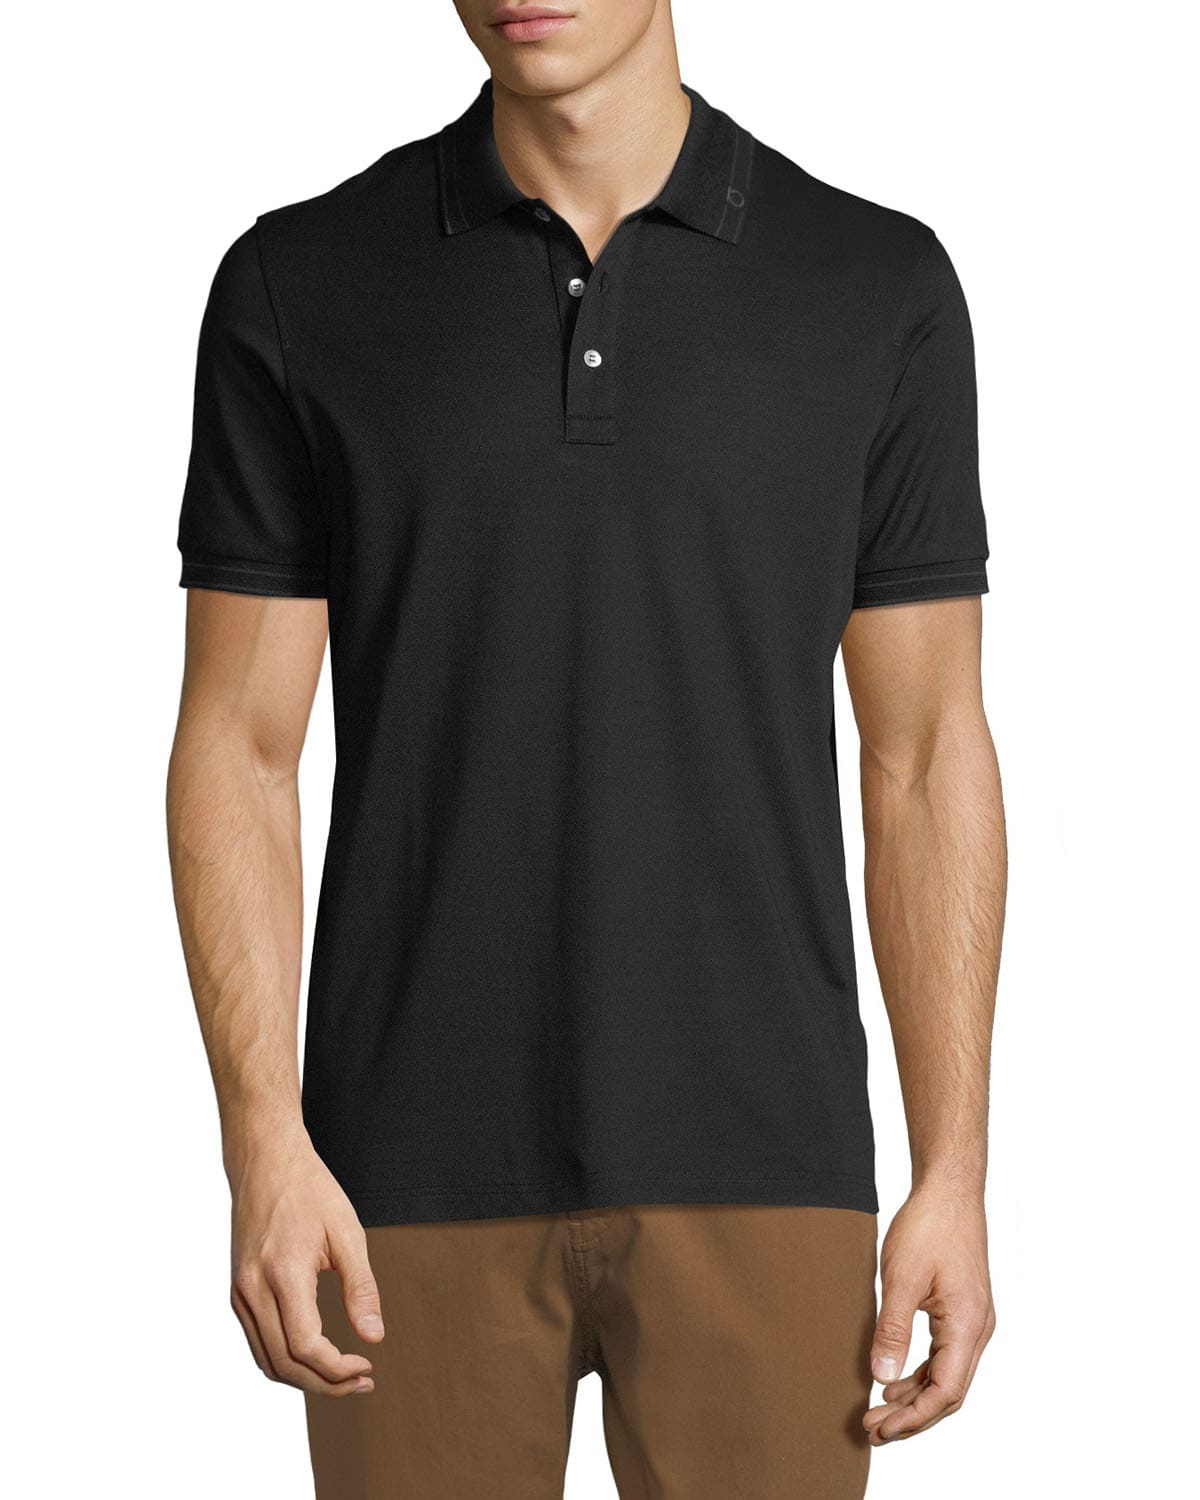 Salvatore Ferragamo Men's Tipped Cotton Polo Shirt